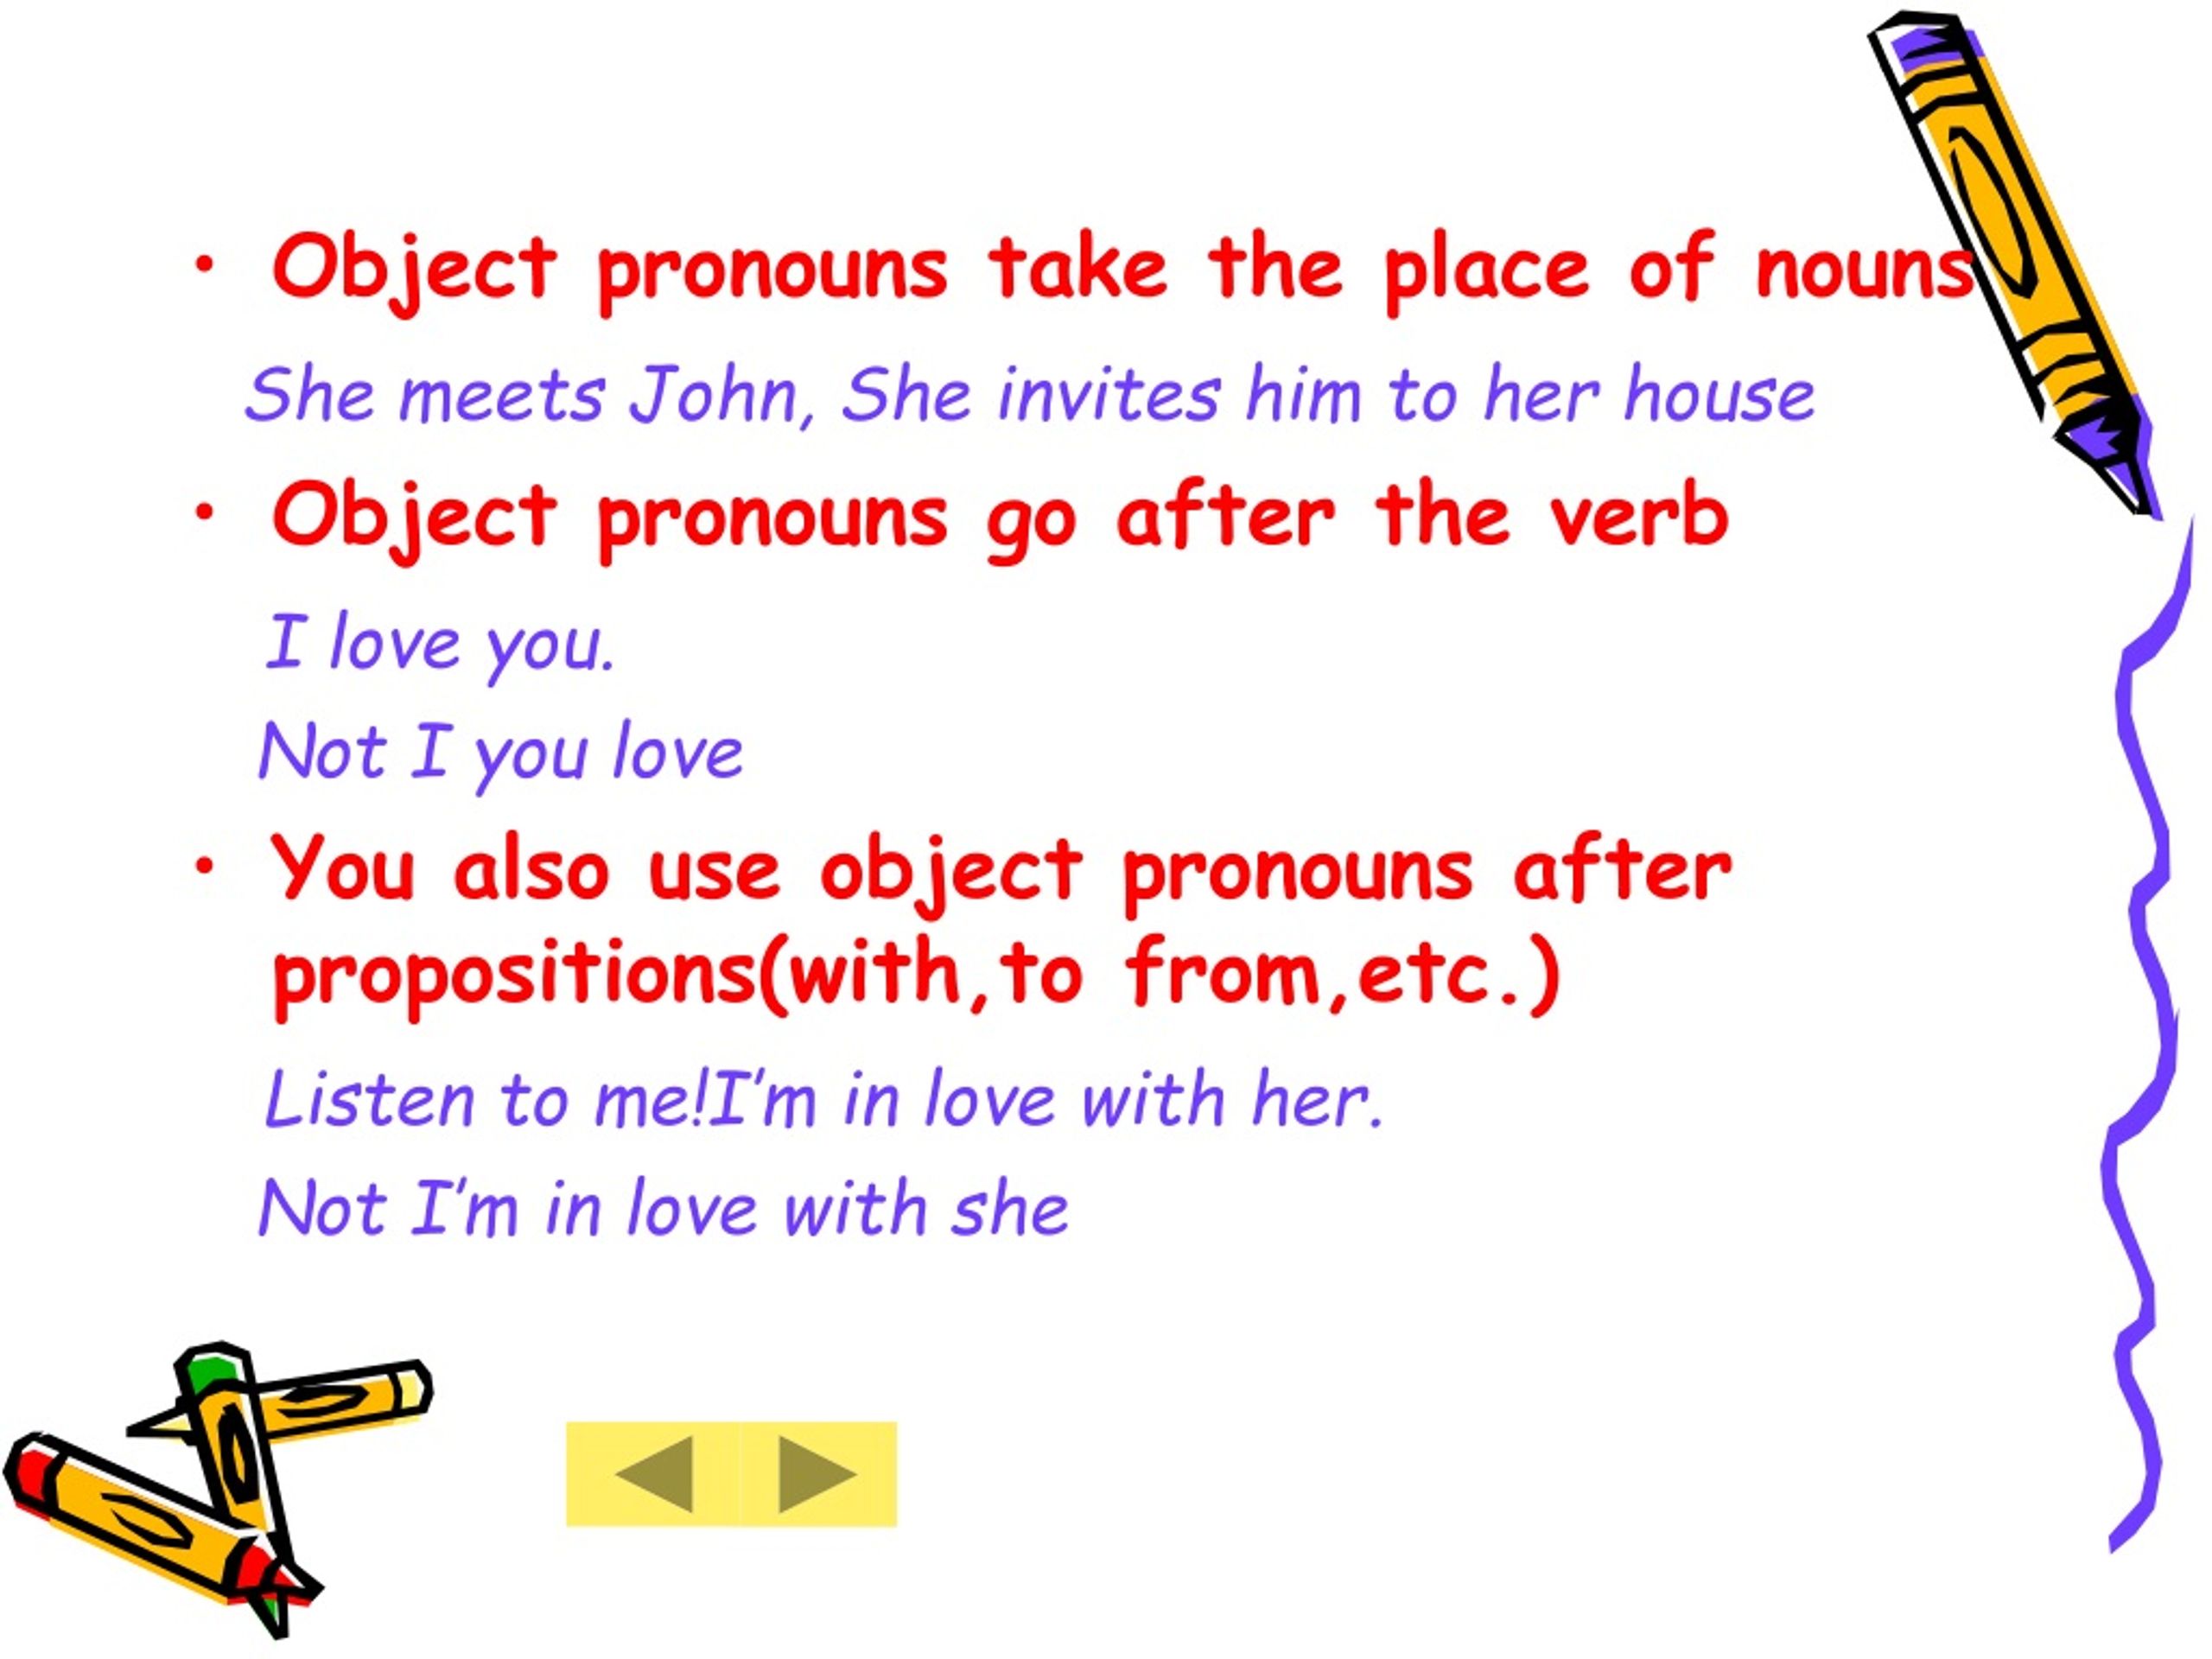 Object перевод на русский. Объектные местоимения упражнения. Object pronouns правило. Subject pronouns в английском языке. Subject and object pronouns правило.